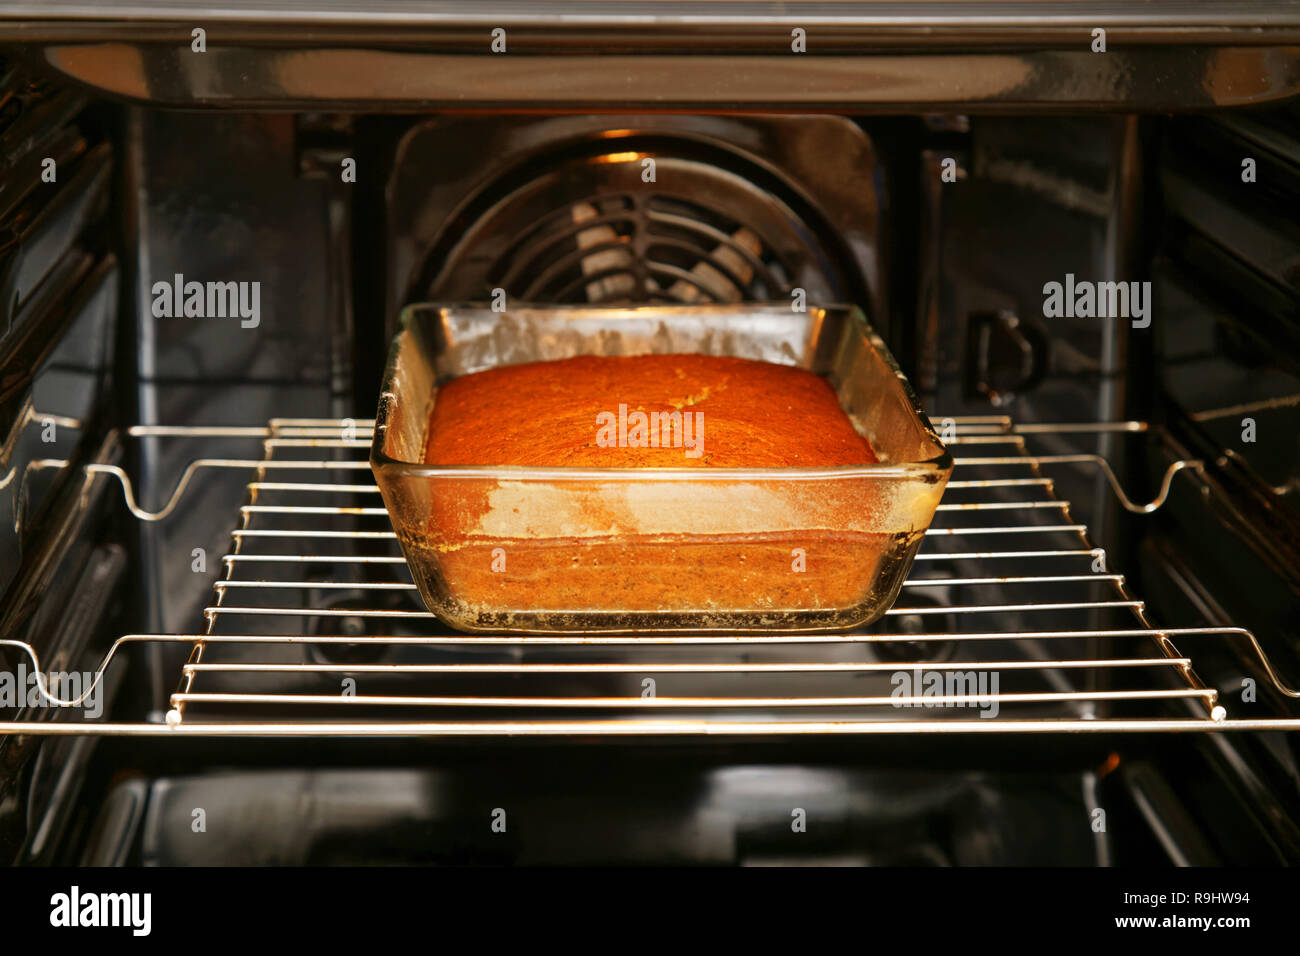 Kuchen in rechteckige Glas Form ist im Ofen gebacken Stockfotografie - Alamy